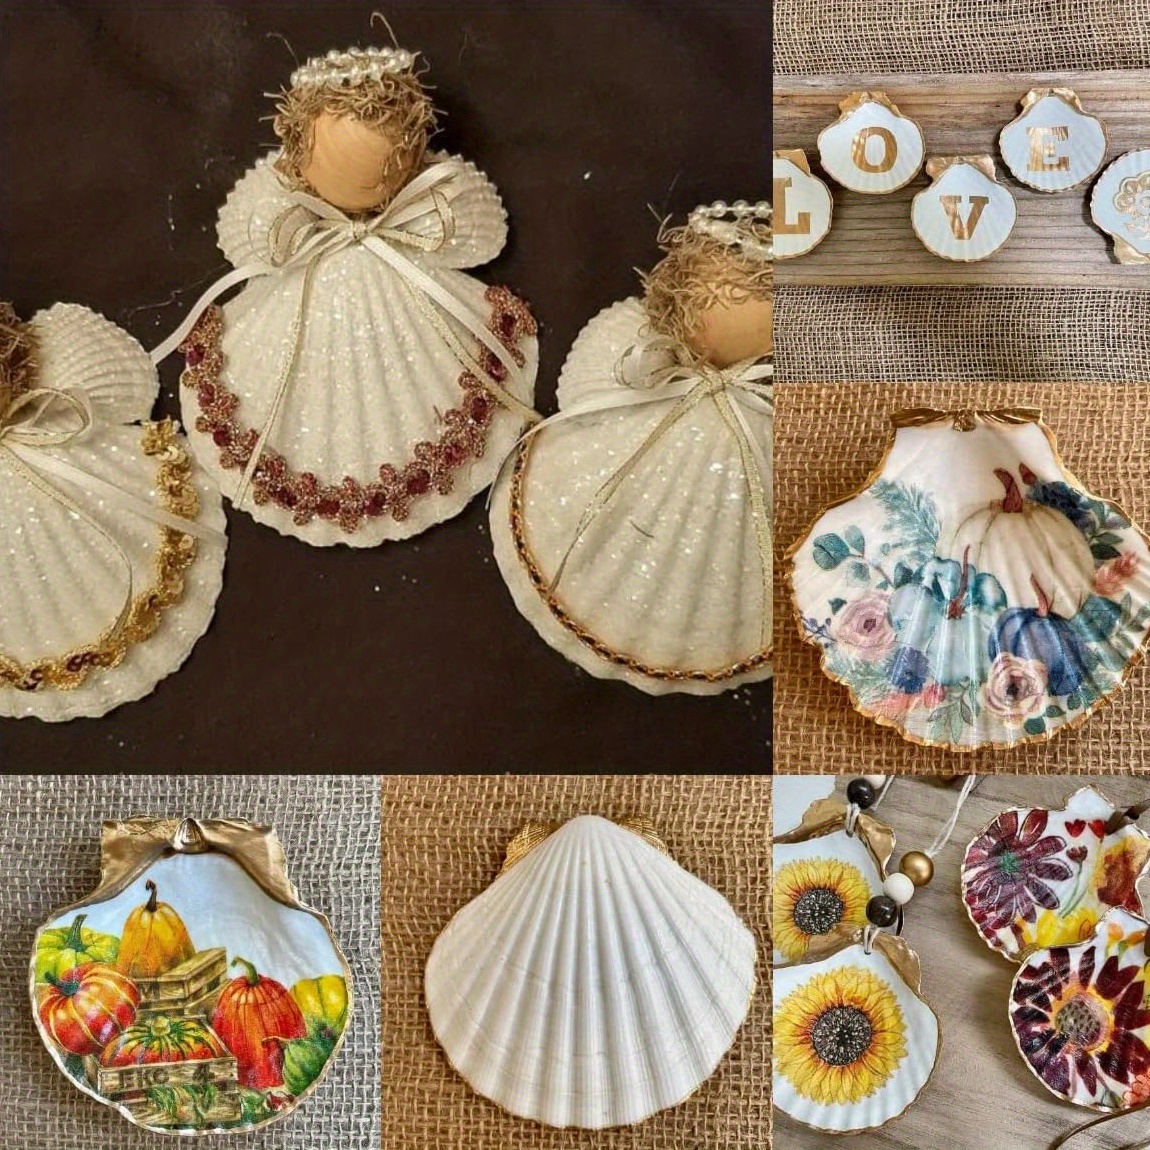 4 ideas para manualidades con conchas de mar  Decoracion conchas de mar,  Artesanías marinas, Artesanías con conchas marinas